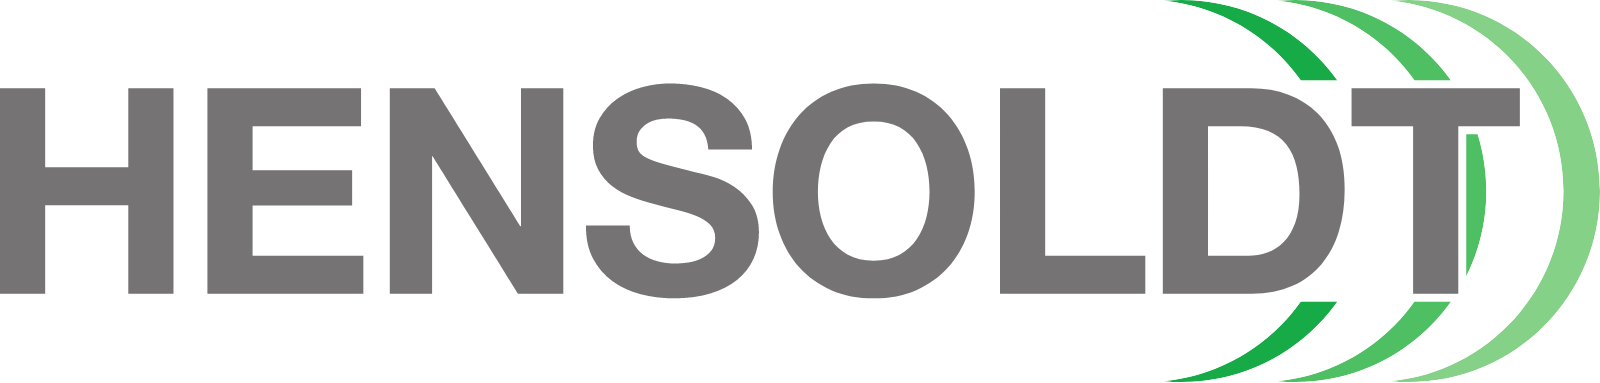 Hensoldt logo large (transparent PNG)